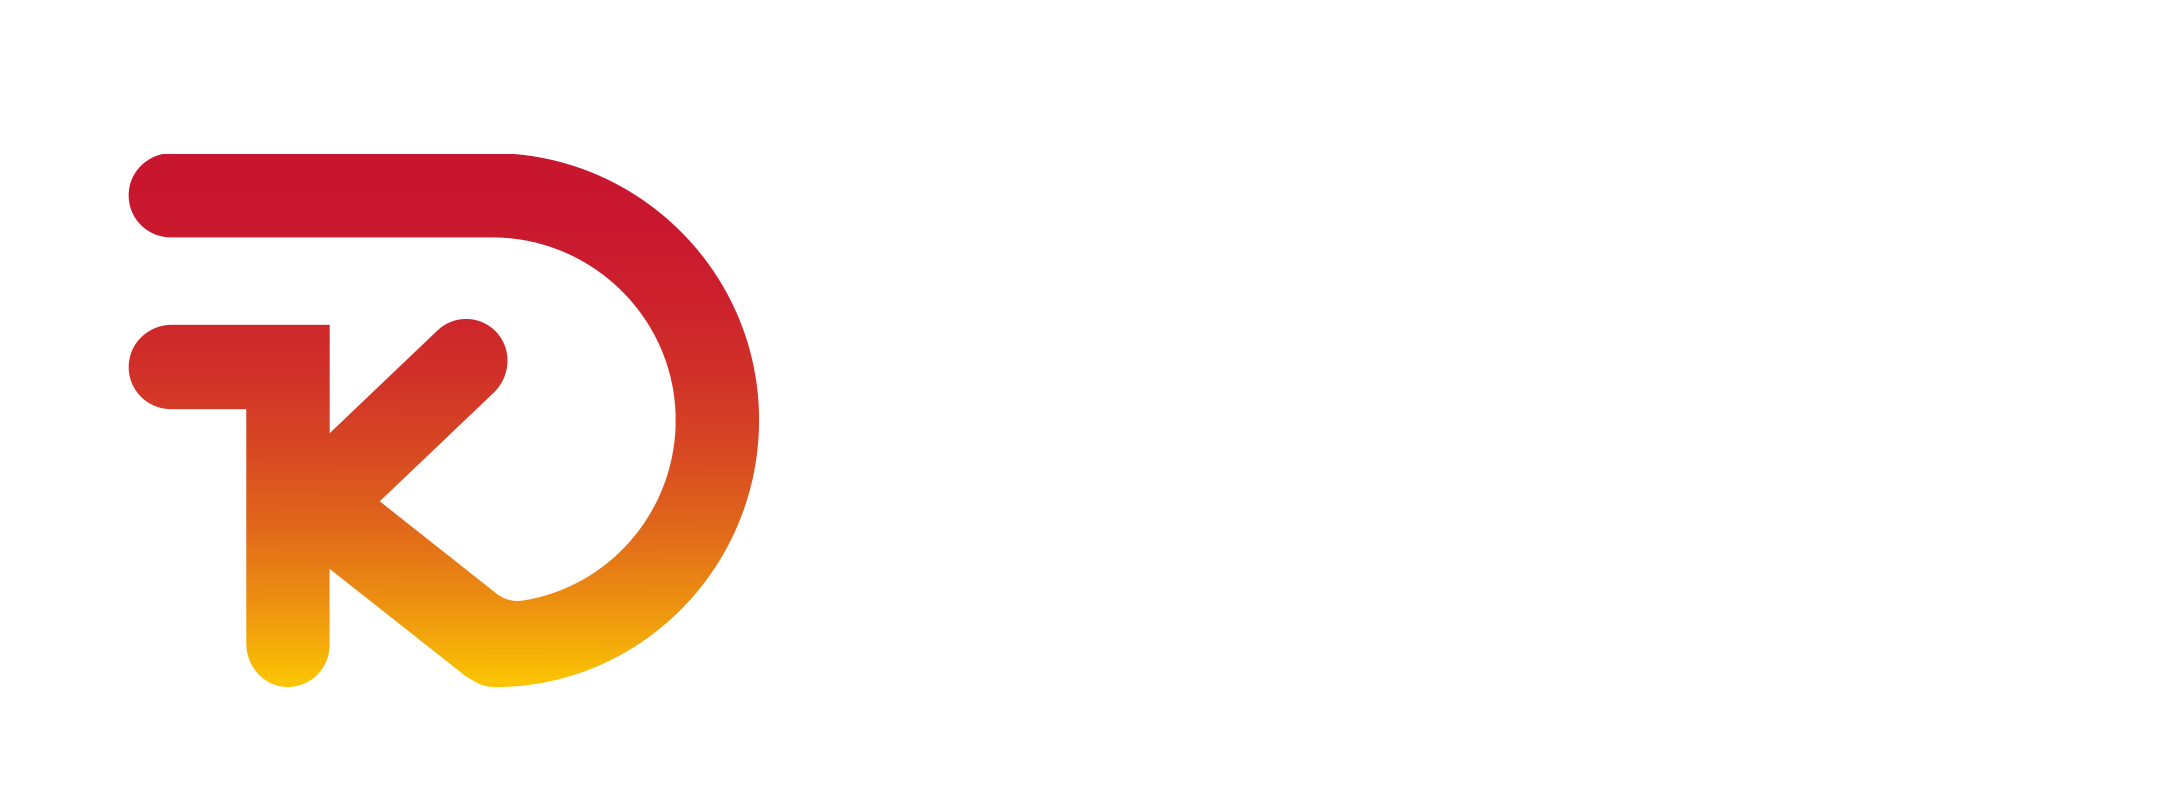 Logo-Kit-Digital